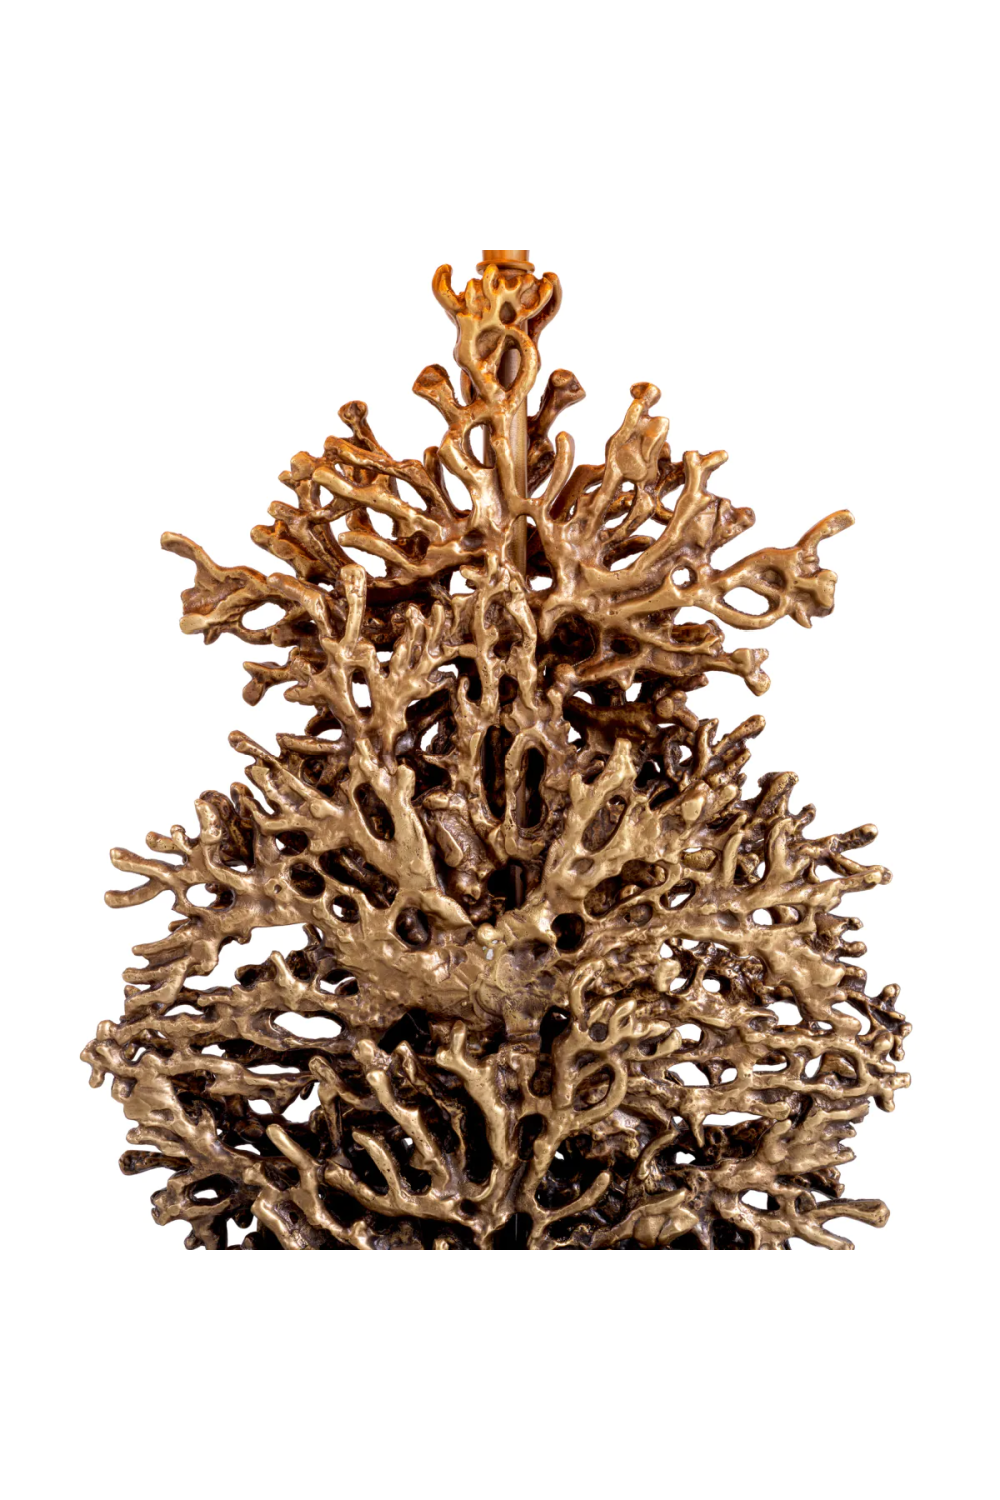 Faux Coral Table Lamp, Eichholtz Corallo